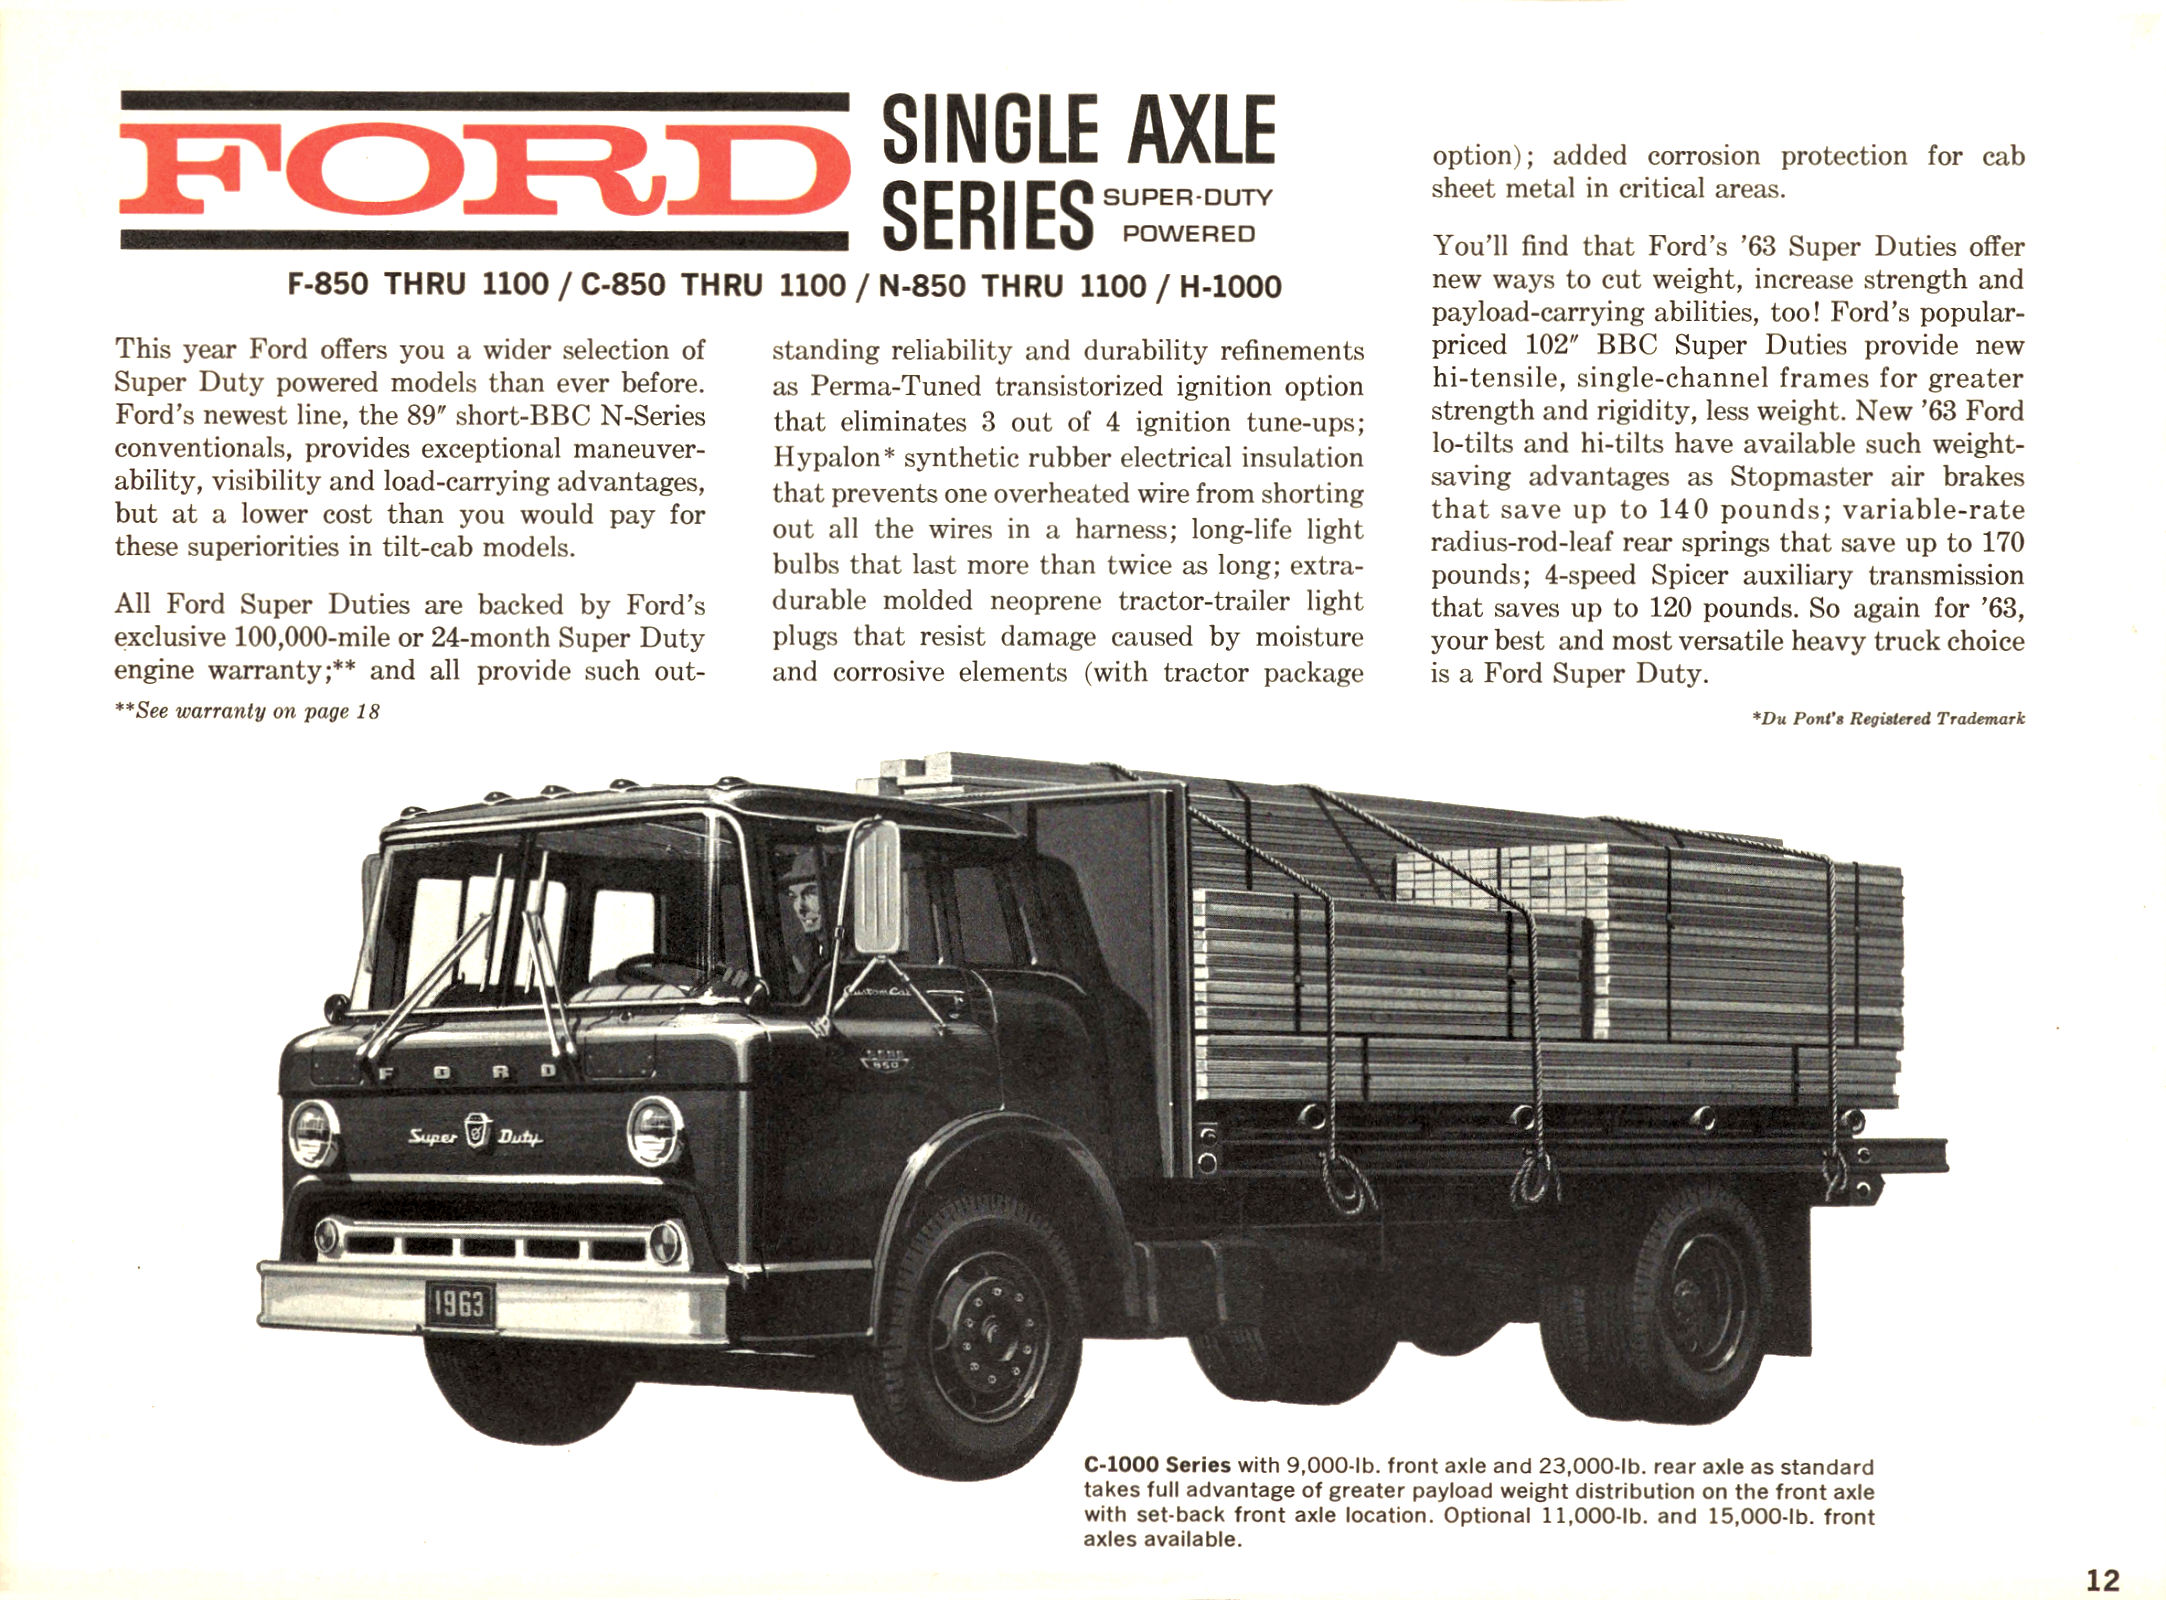 1963 Ford Trucks-12